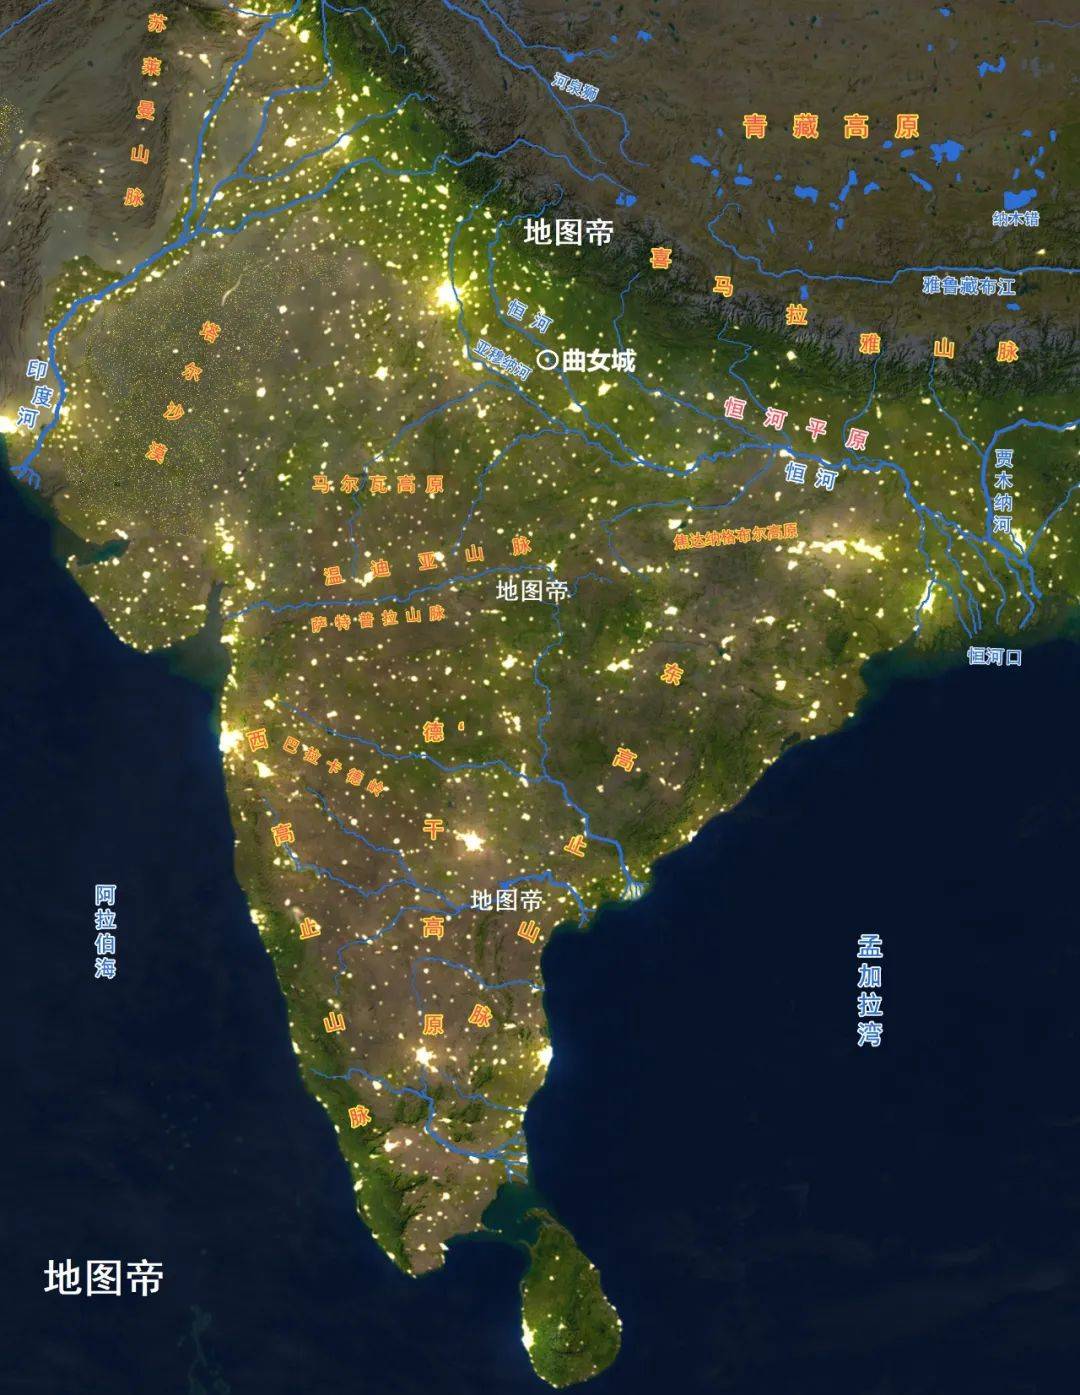 印度地图简笔画 彩色图片